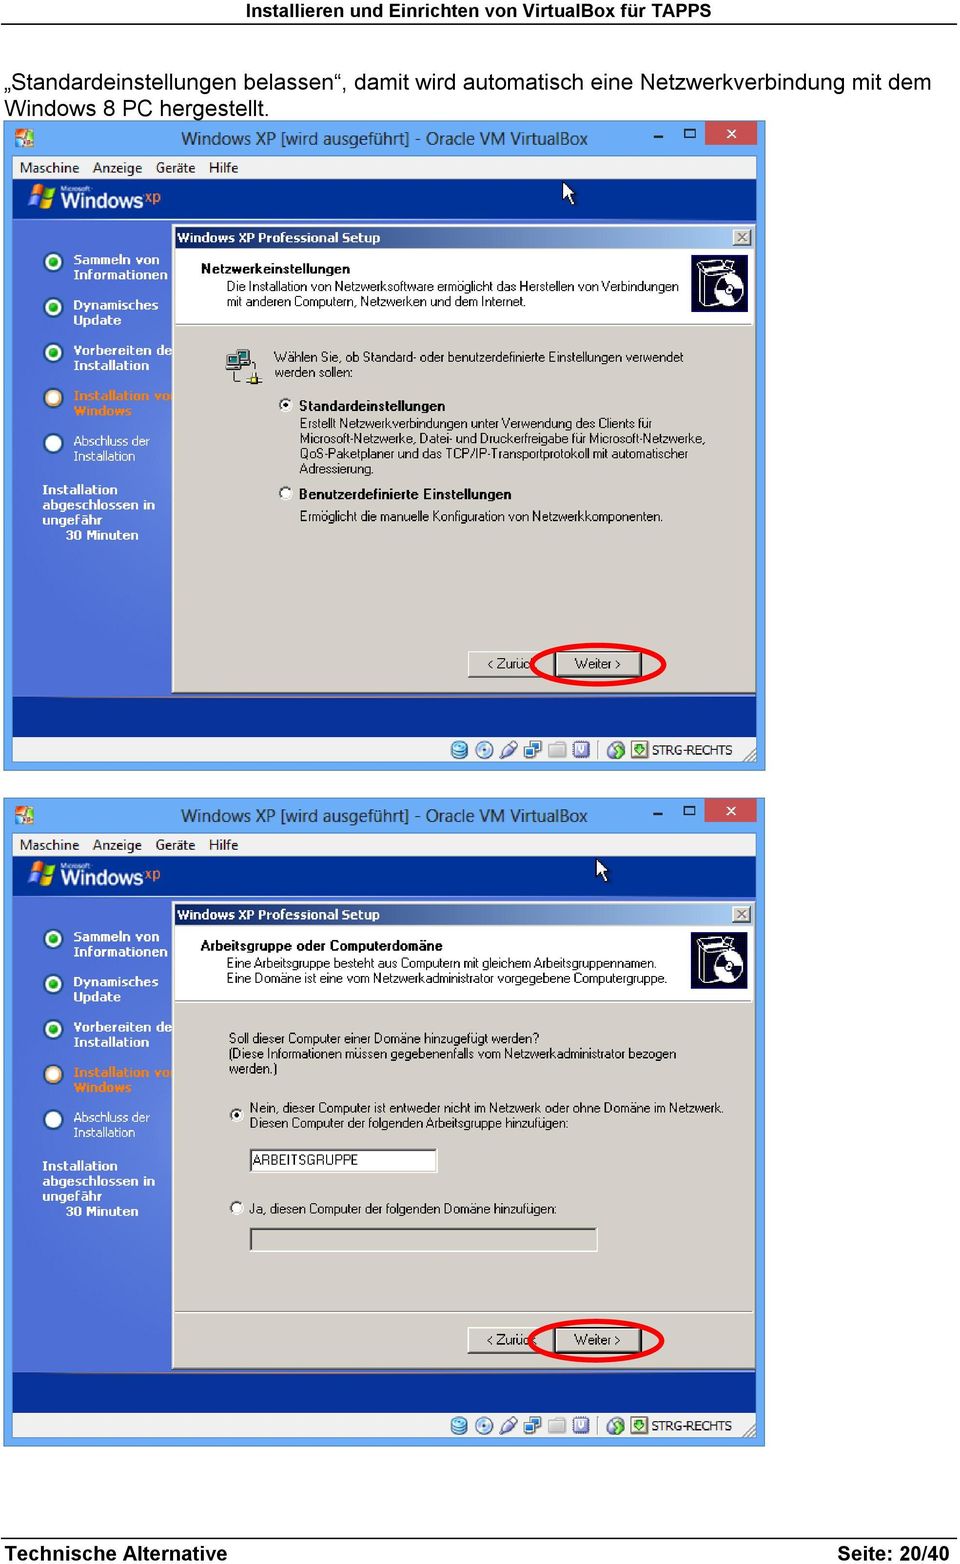 Netzwerkverbindung mit dem Windows 8